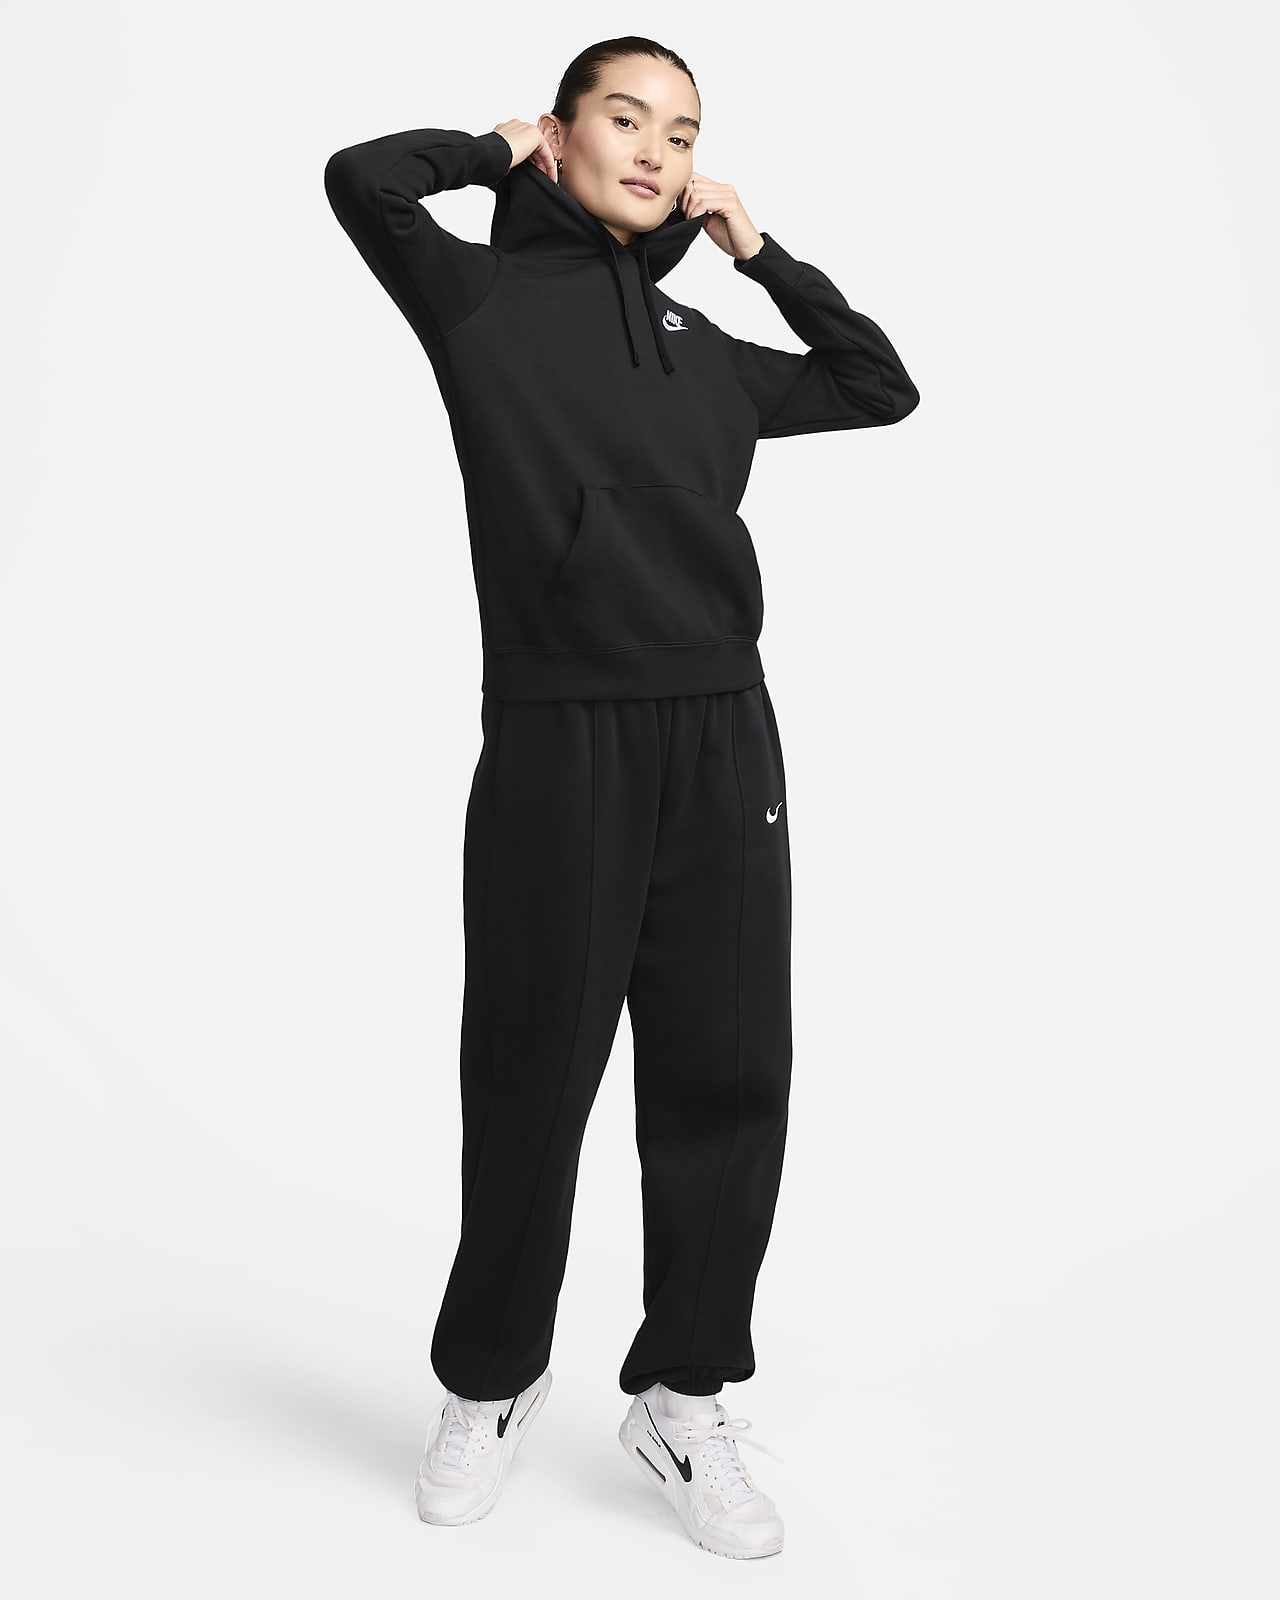 Nike Women's Sportswear Club Fleece Logo Pullover Hoodie, Black